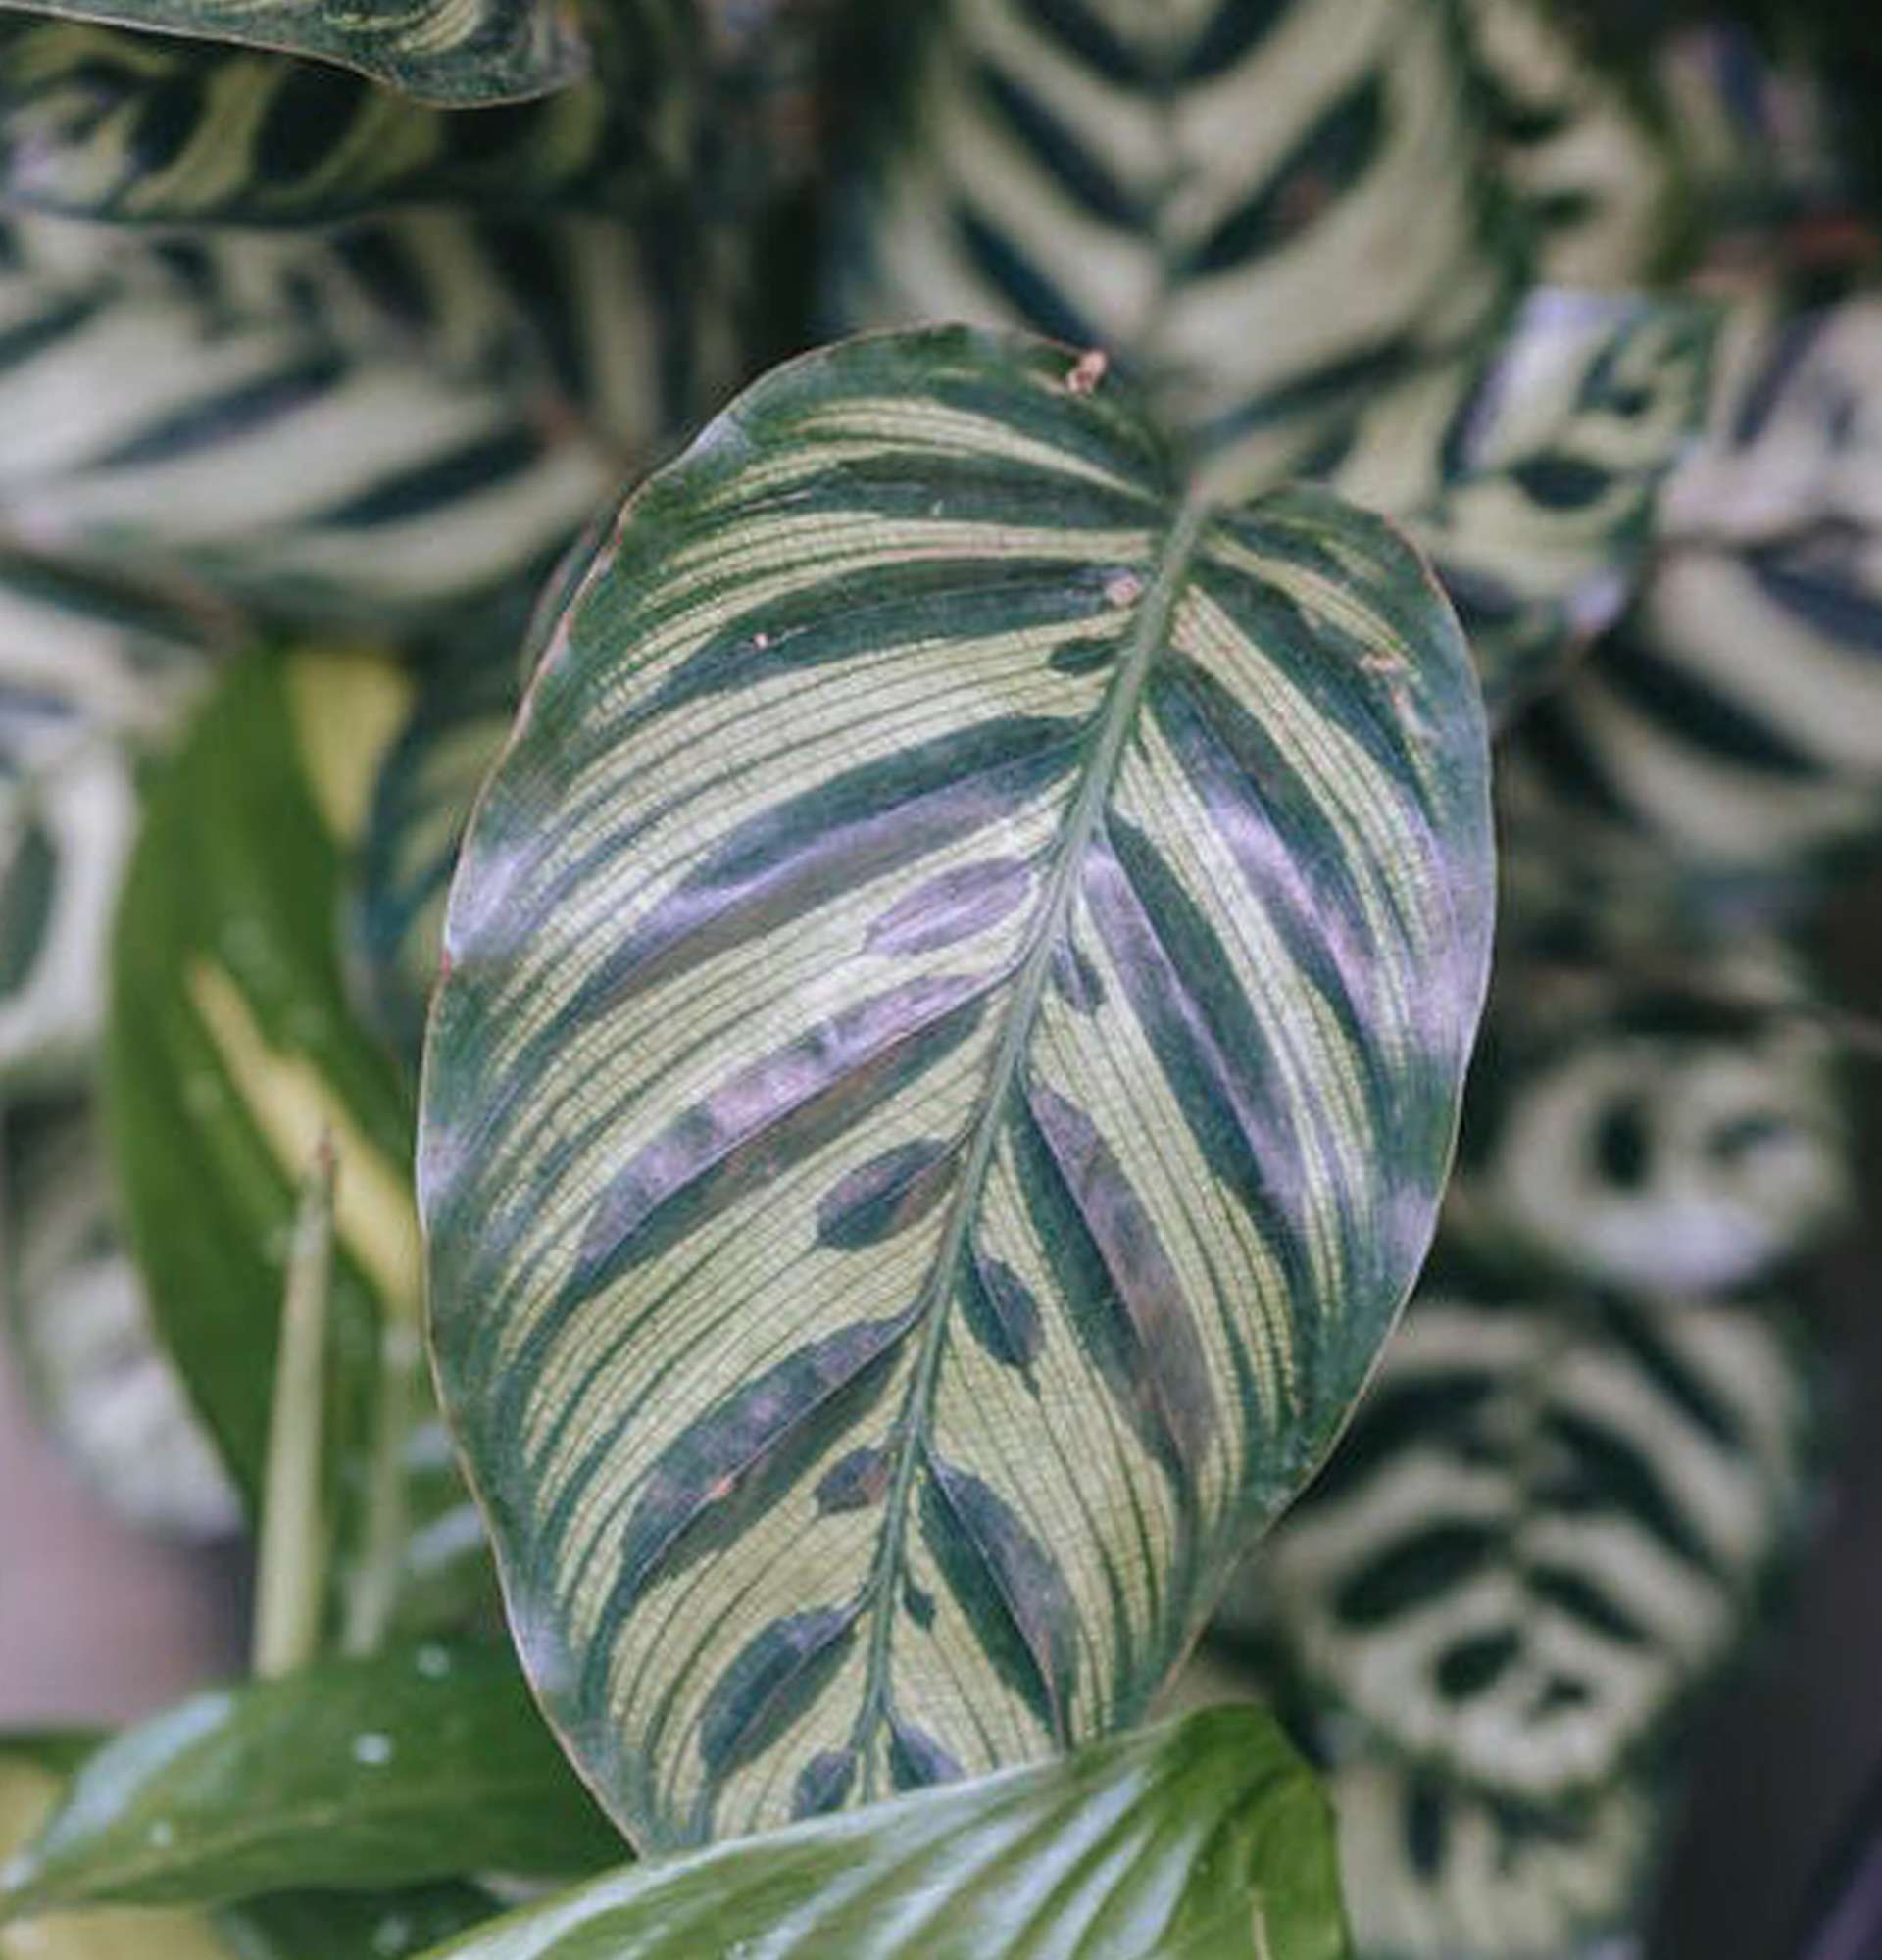  ктенанте фото - растение с полосатыми листьями